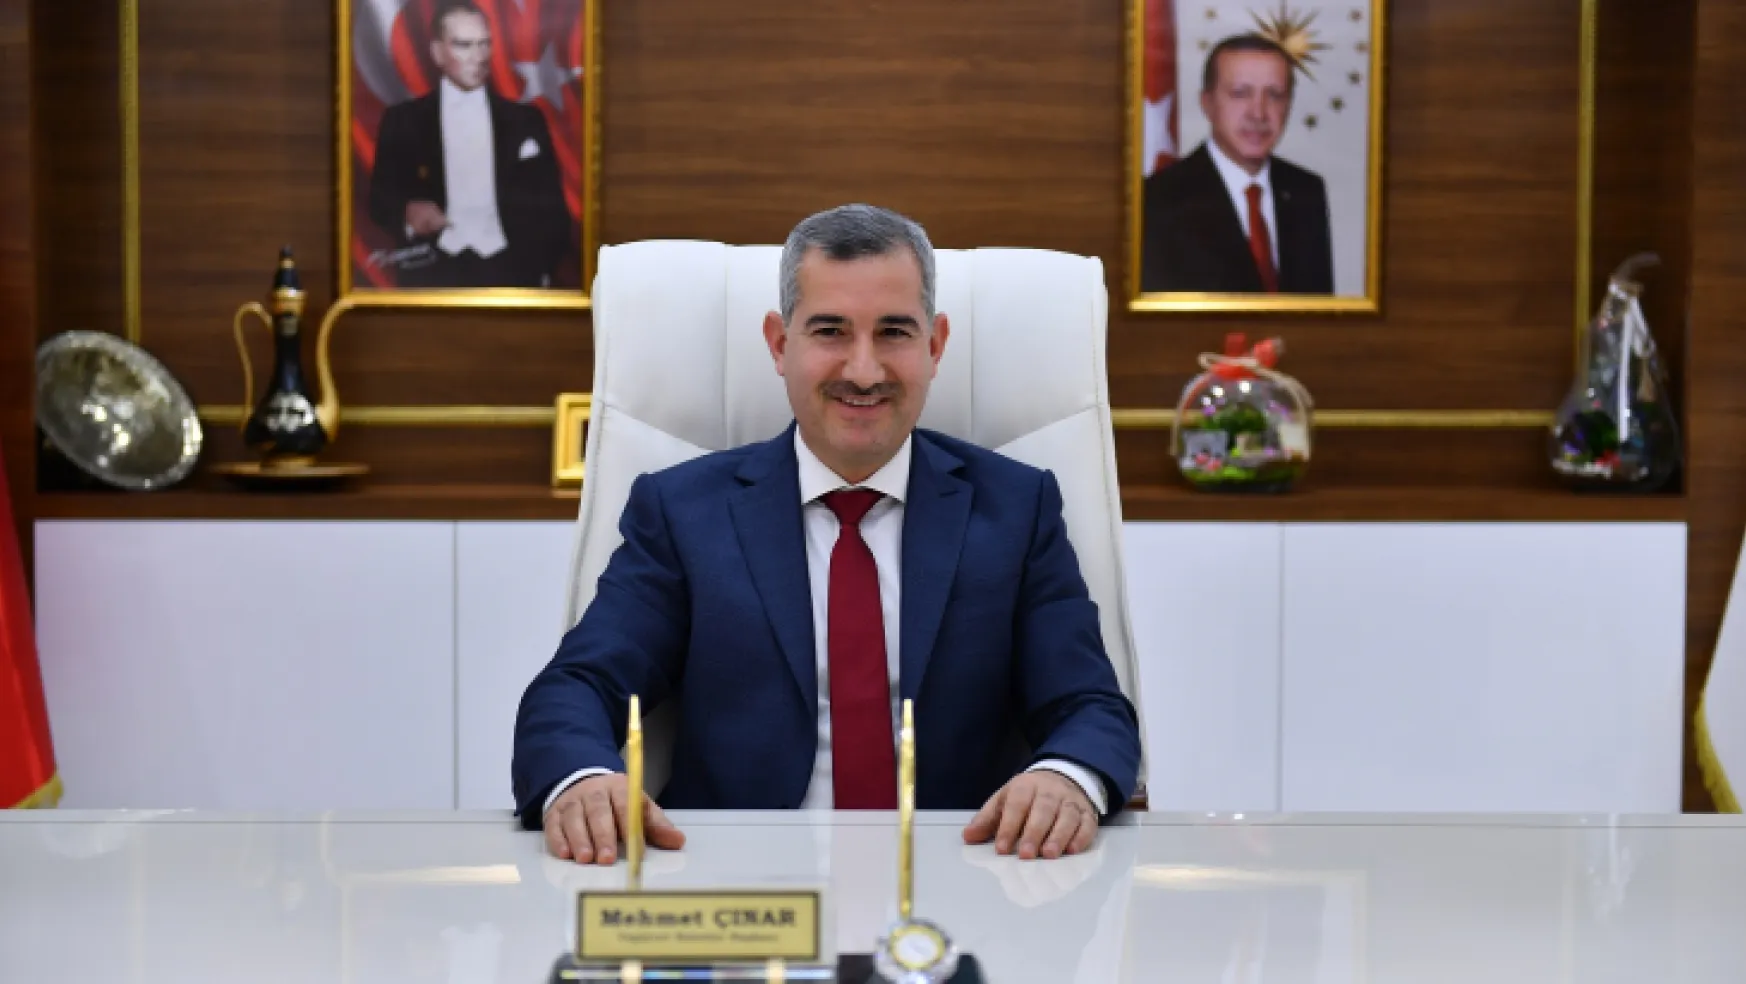 Yeşilyurt Belediye Başkanı Mehmet Çınar'dan Yeni Yıl Kutlama Mesajı